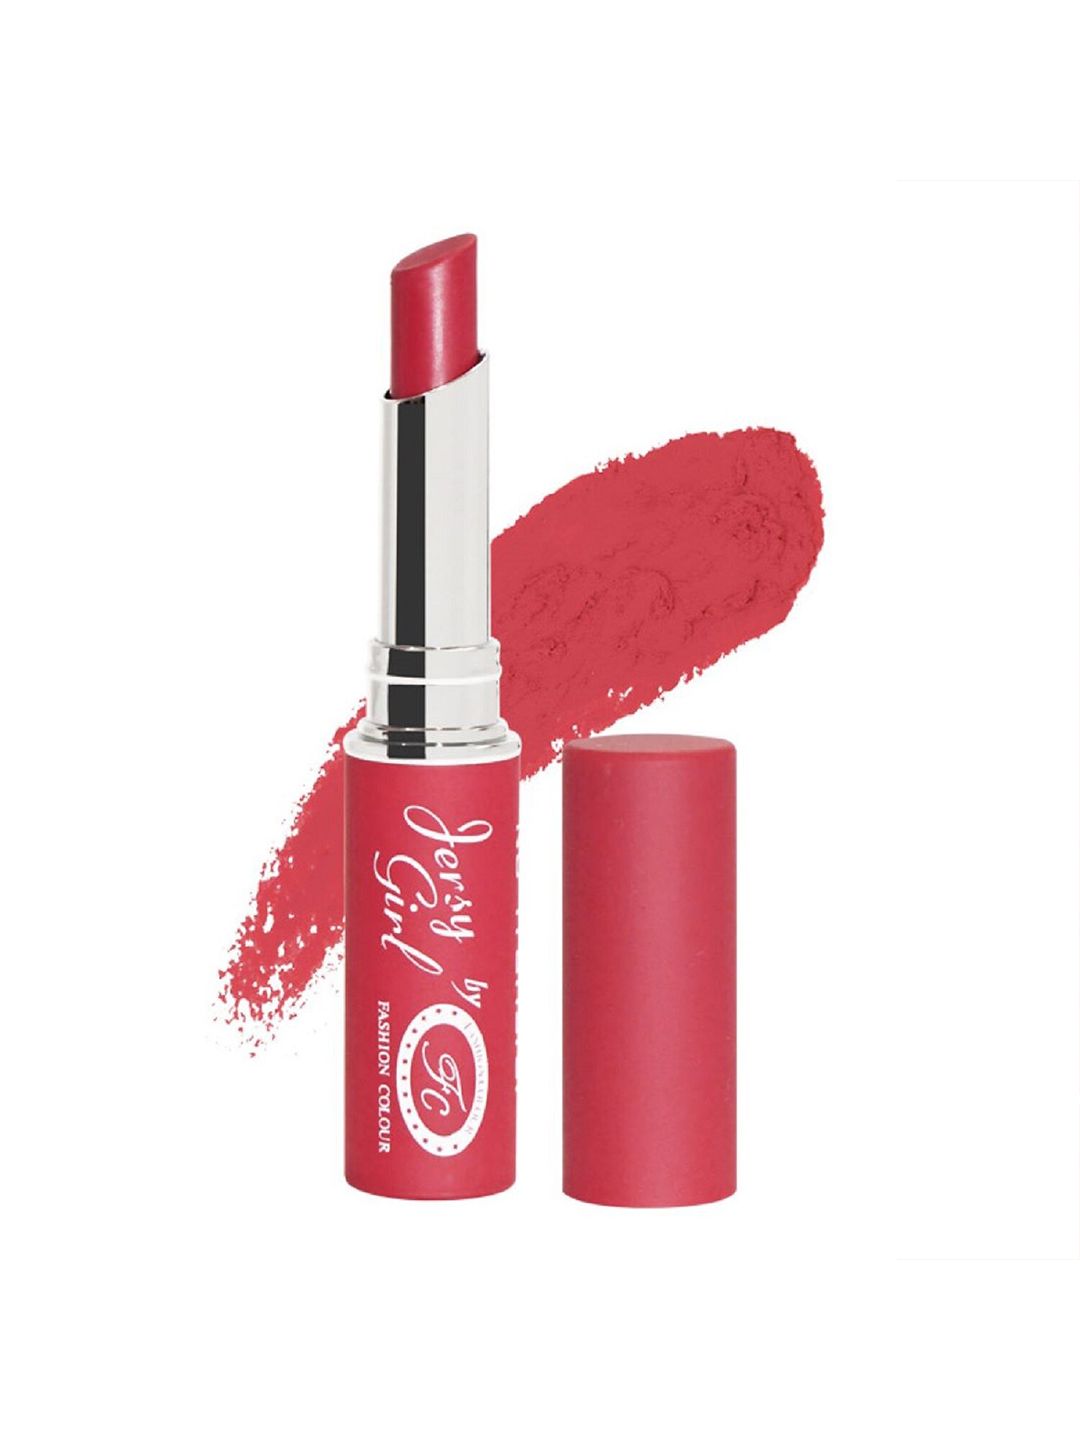 Fashion Colour Jersy Girl Kiss Proof No Transfer Matte Lipstick - Carminerose 01 Price in India